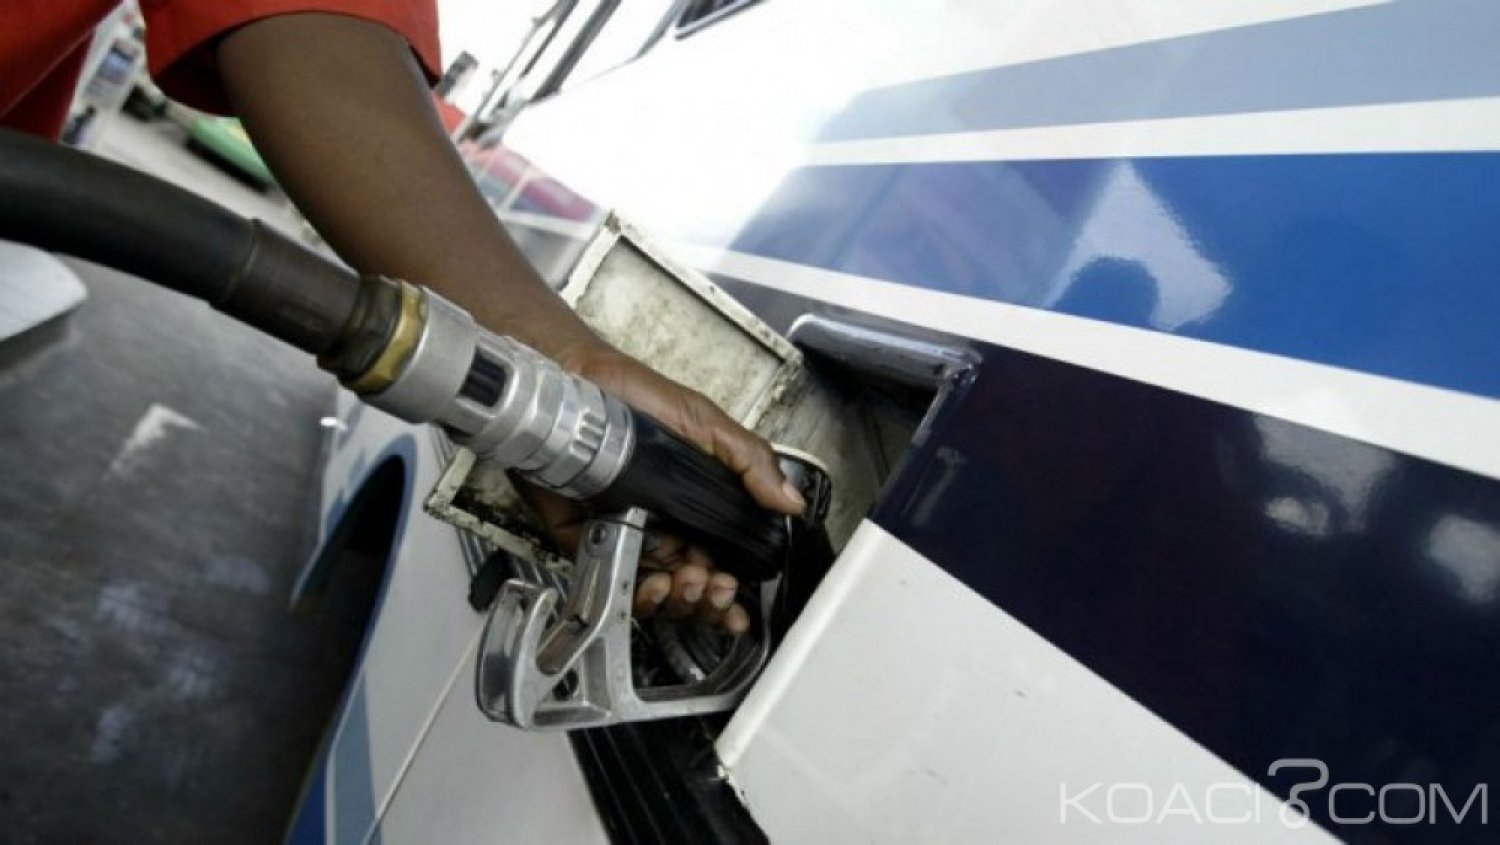 Côte d'Ivoire : Le coût de l'essence super passe de 620 à  630 francs CFA, le gasoil reste inchangé à  615 FCFA